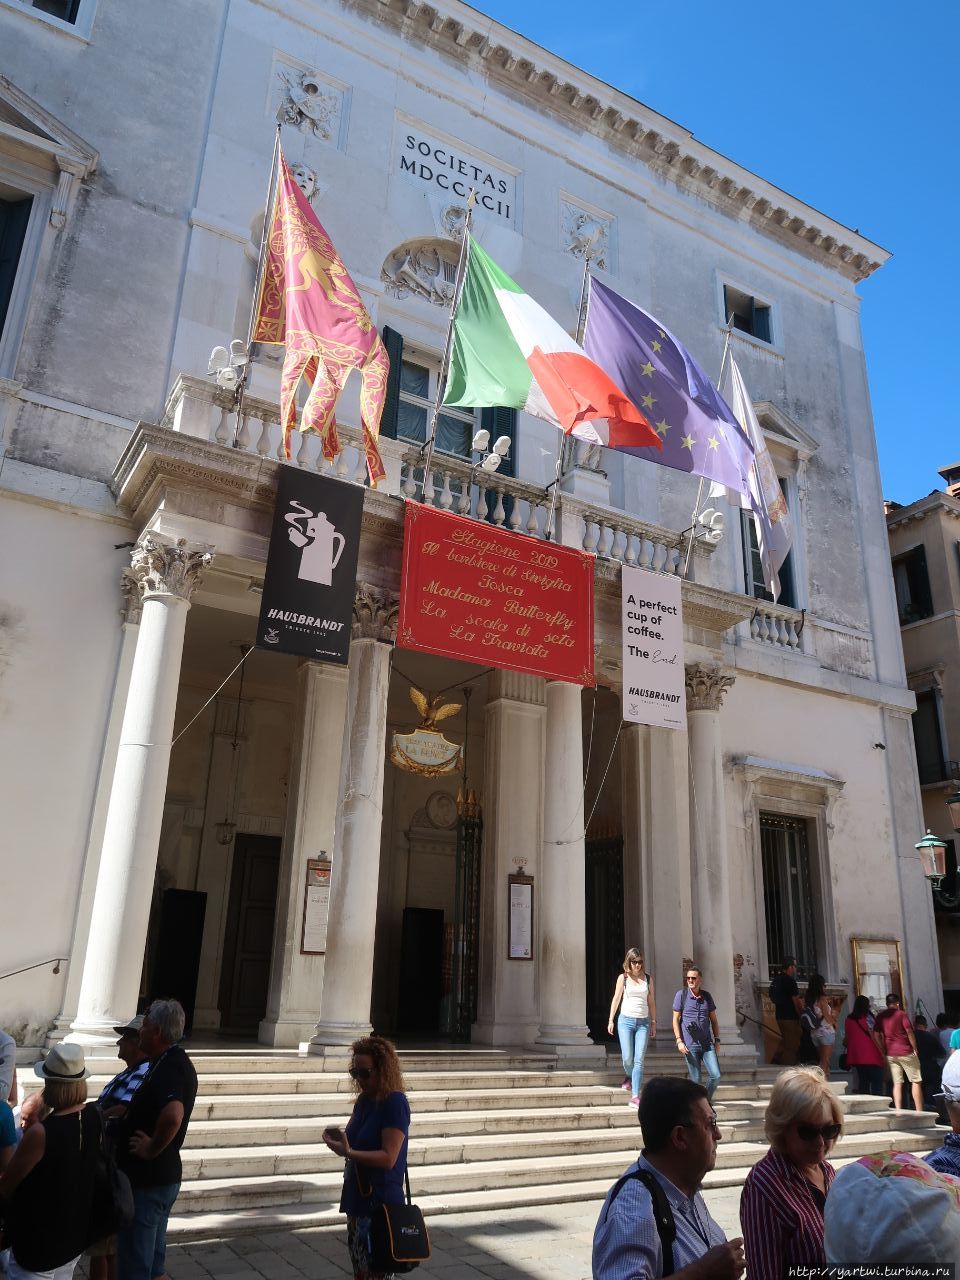 Театр «Ла Фениче» — оперный театр в Венеции (1792 год). В названии отражено то обстоятельство, что театр дважды подымался, как феникс из пепла: 
горел, но каждый раз восстанавливался. Венеция, Италия